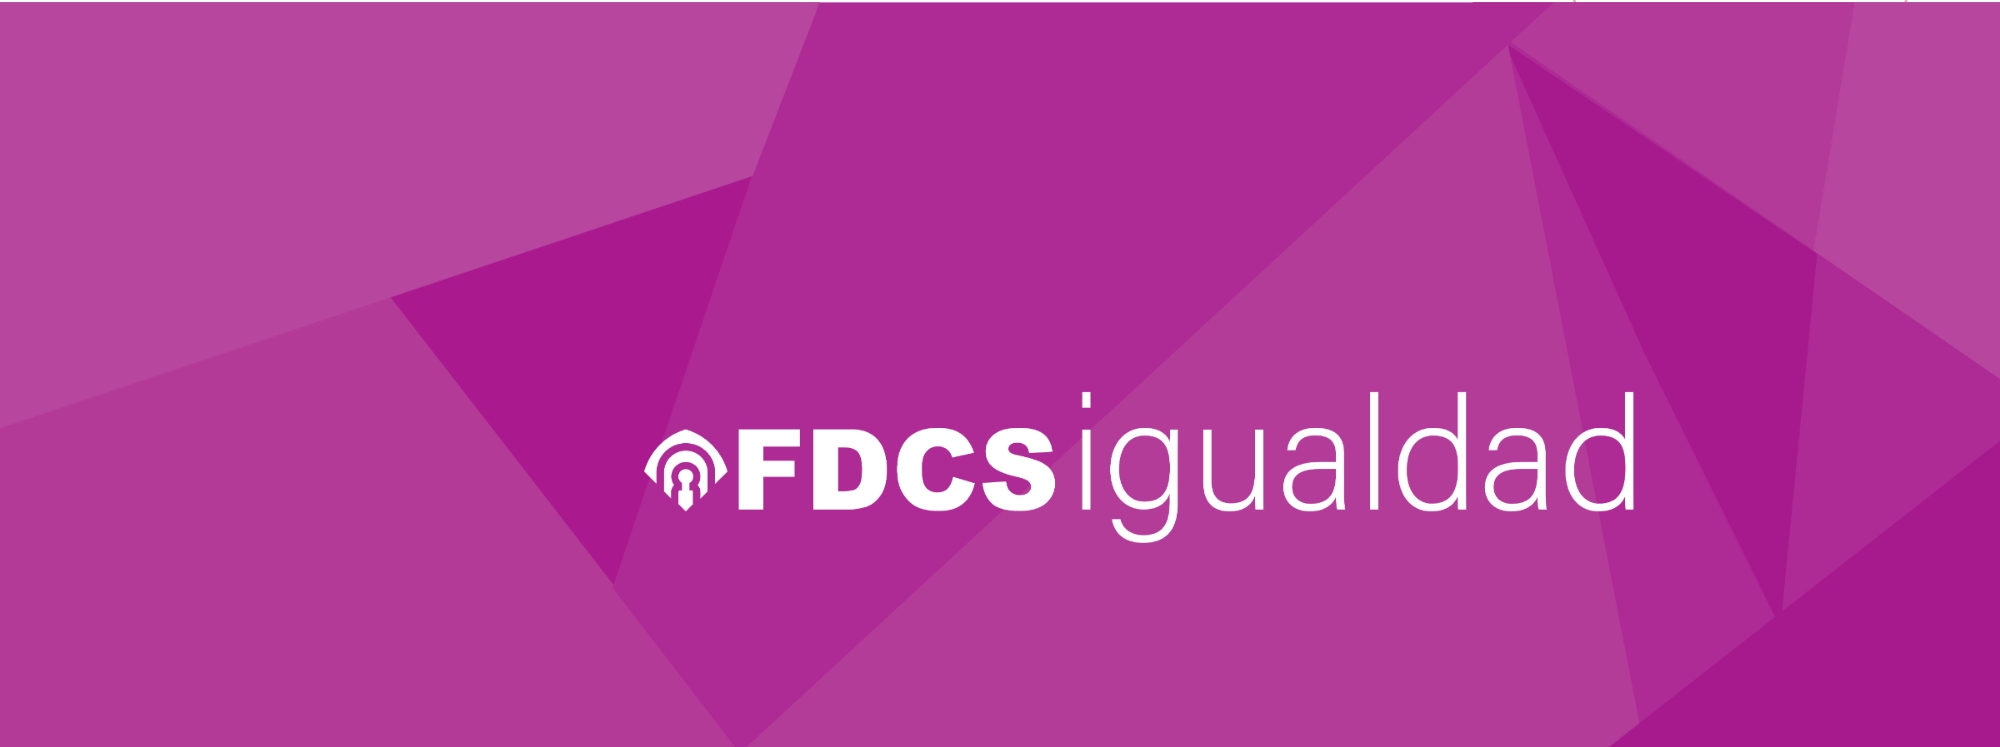 FDCS Igualdad